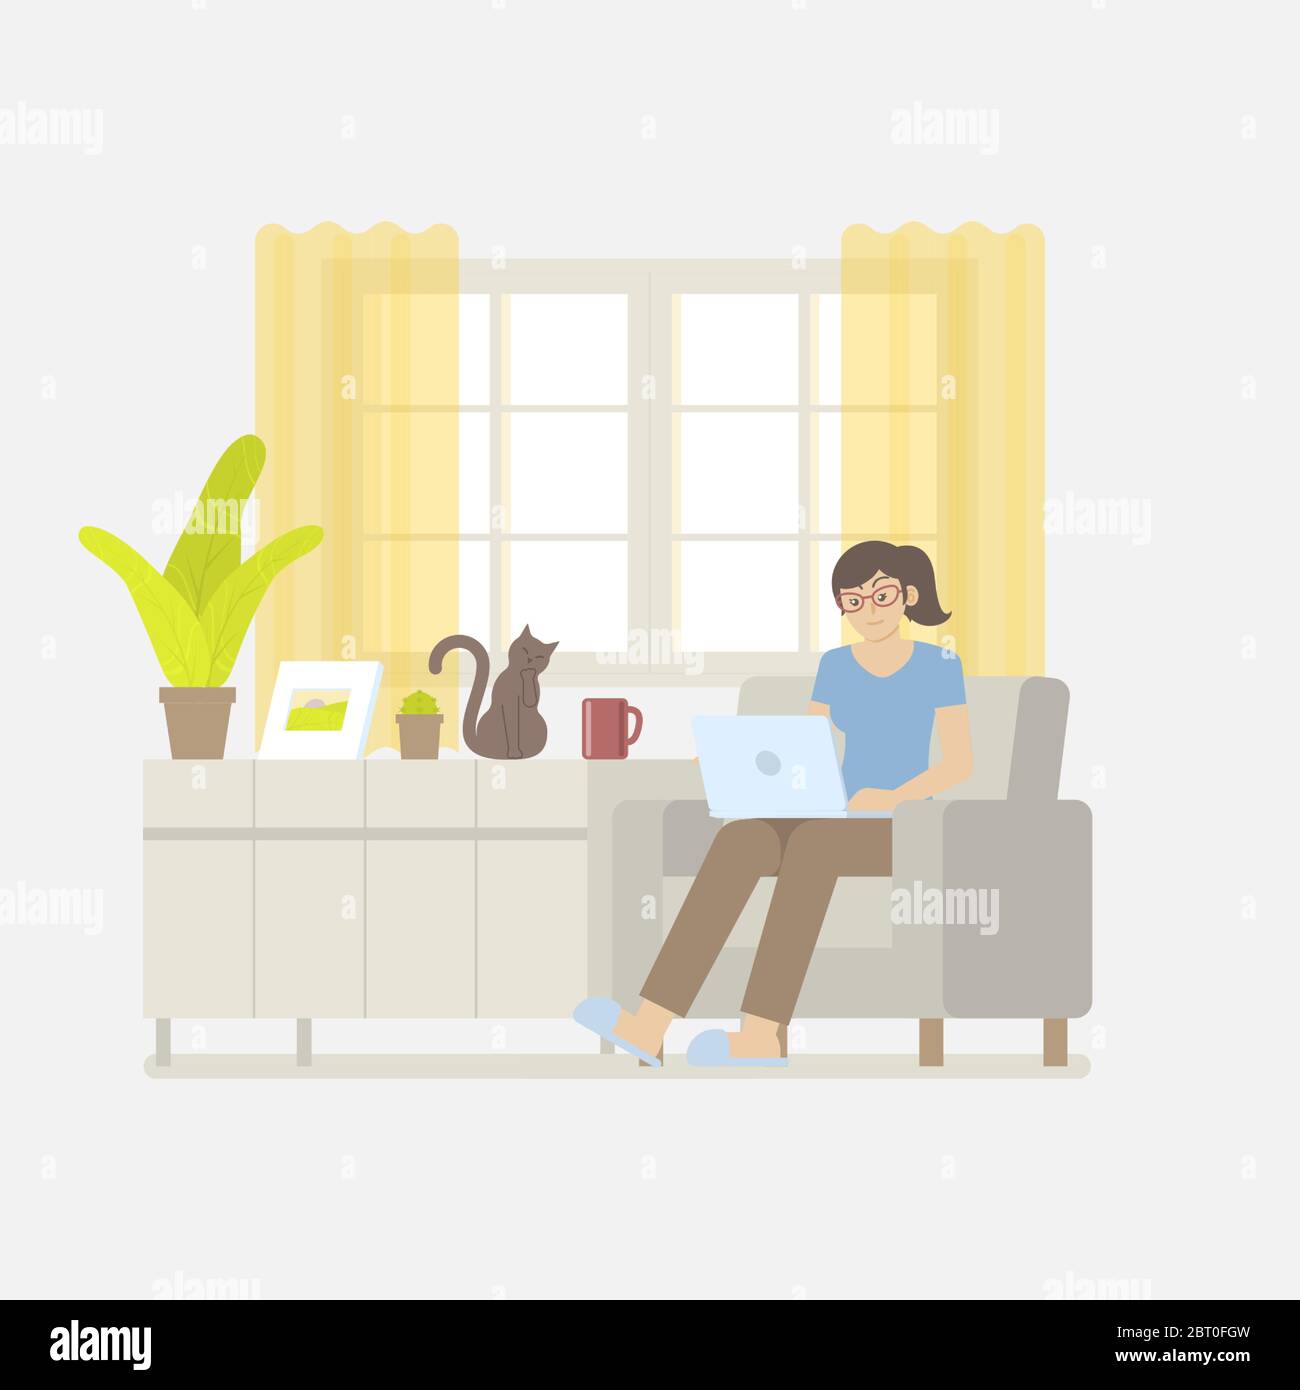 Jeune femme en vêtements décontractés travaillant à la maison avec ordinateur portable sur un fauteuil dans un salon intérieur avec fenêtre, rideau, armoire, cadre photo Illustration de Vecteur